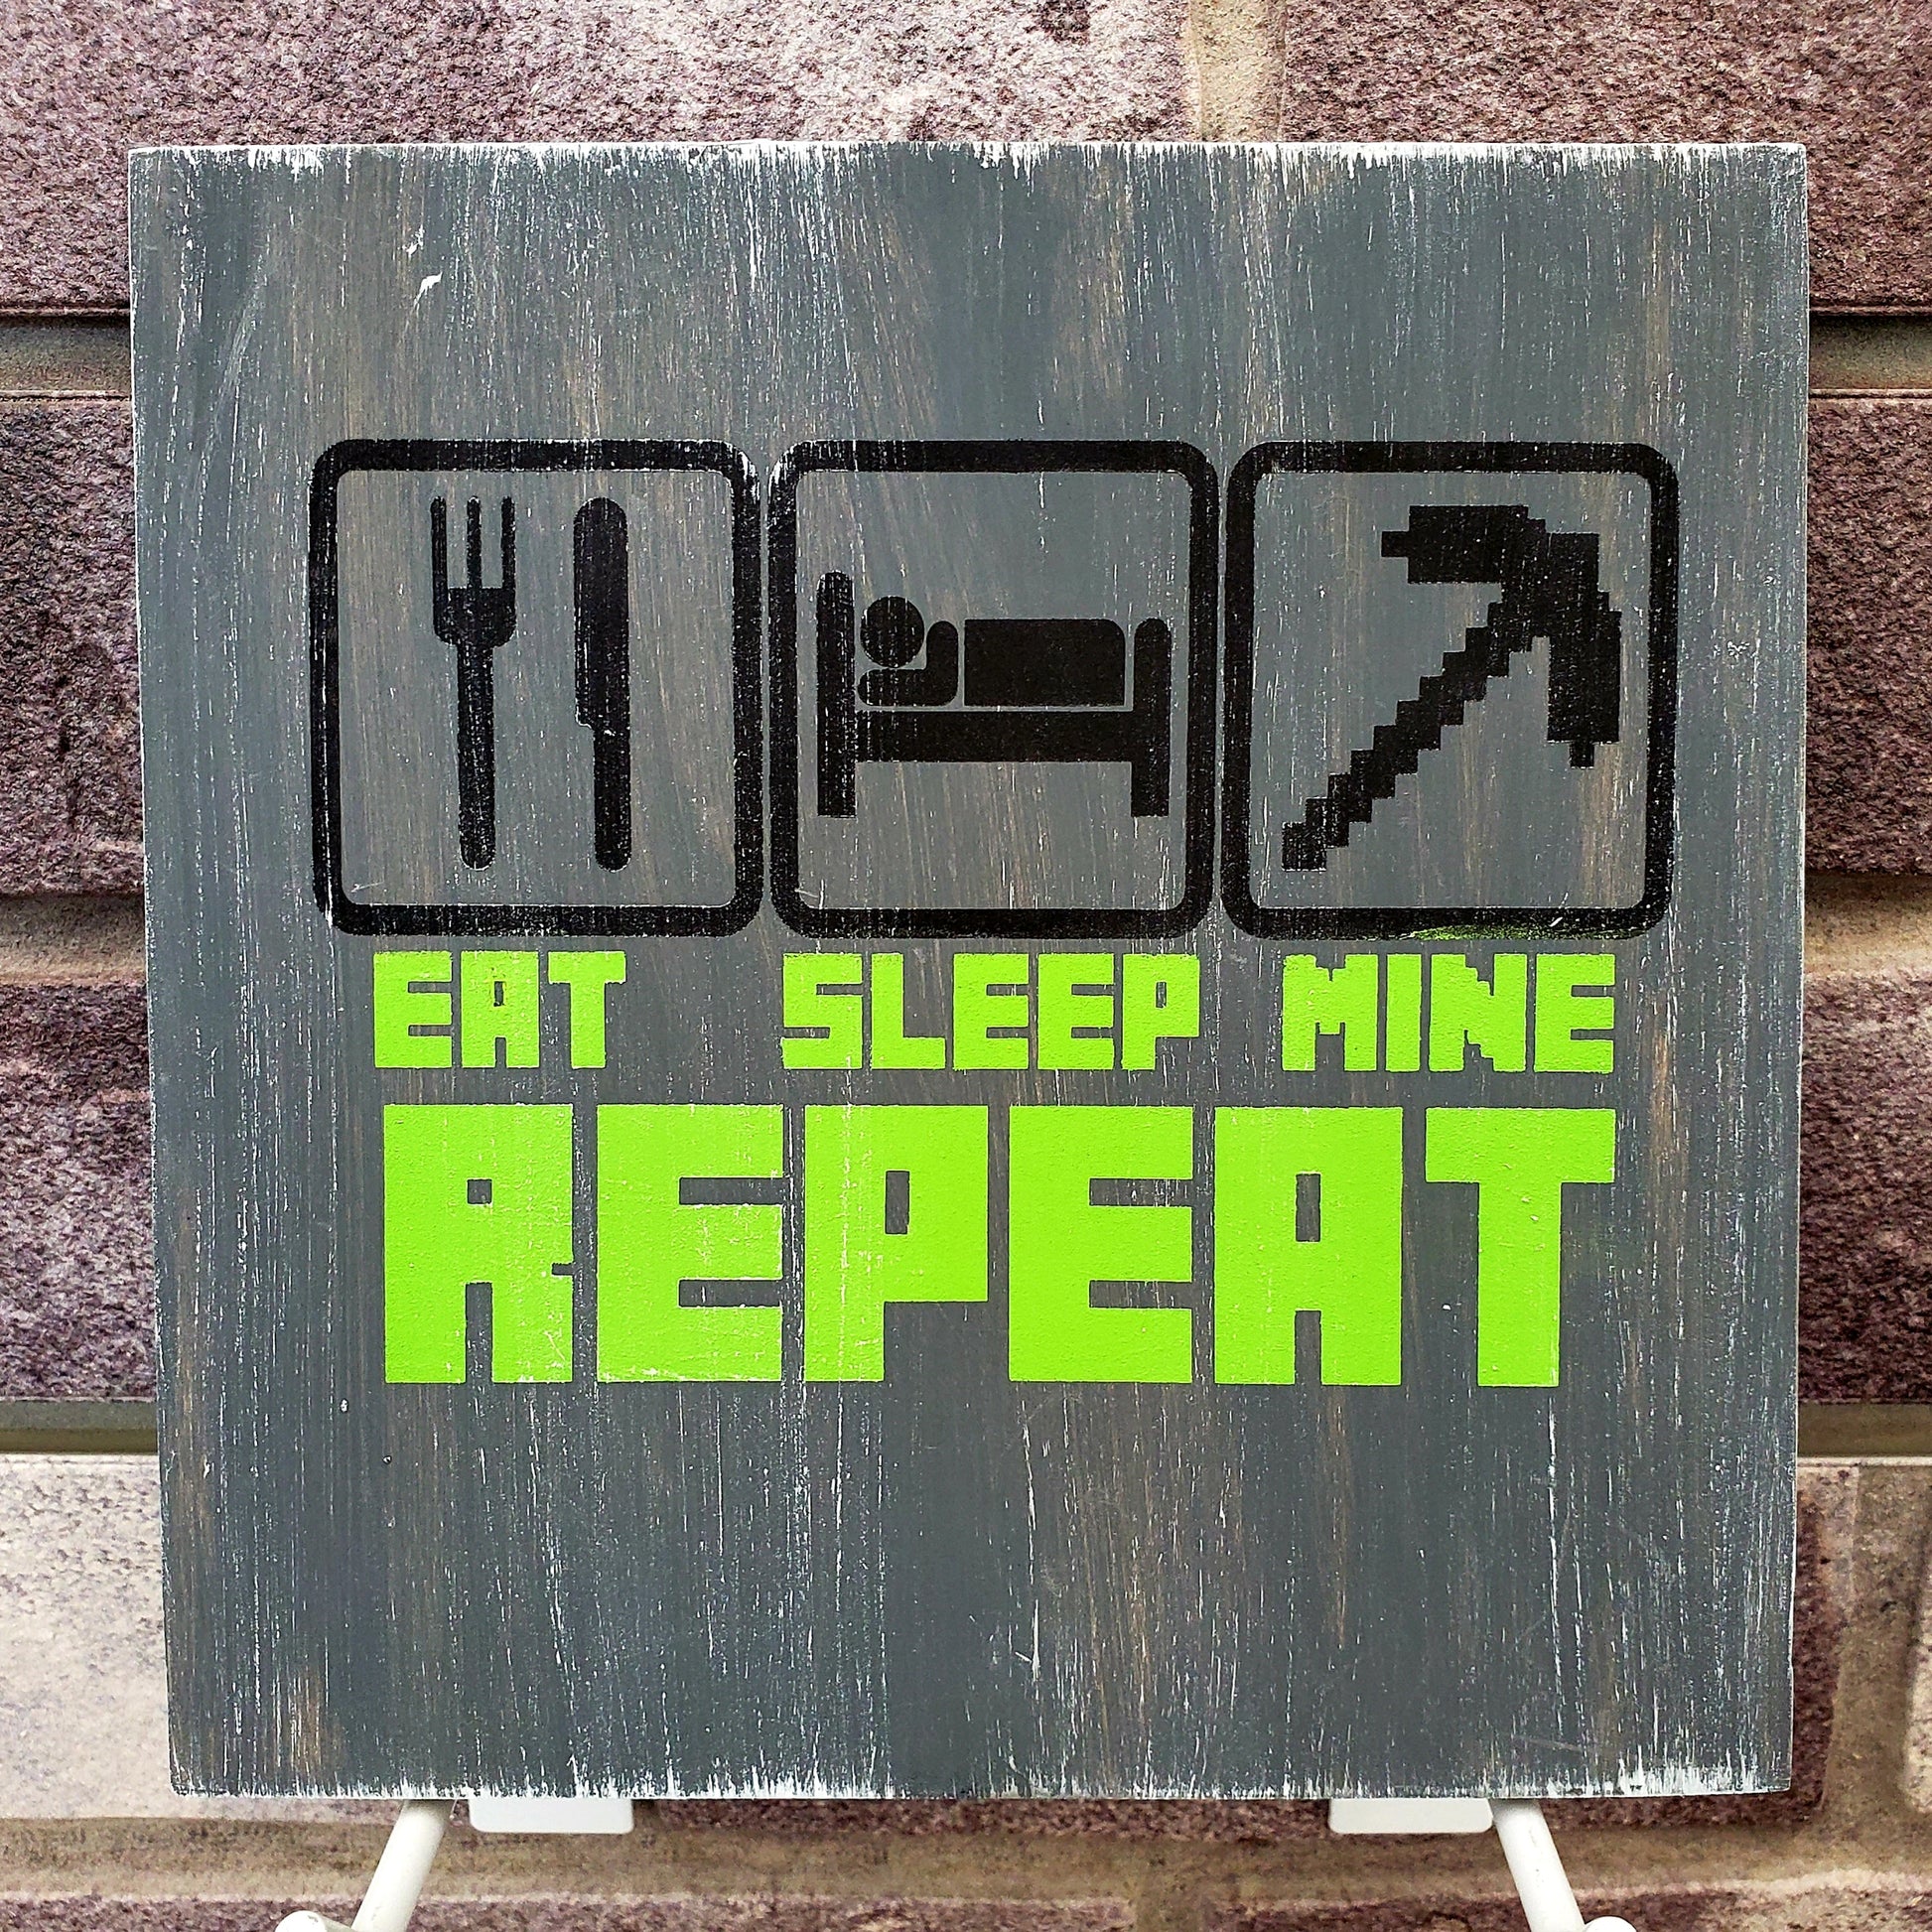 Eat Sleep Mine Repeat: MINI DESIGN - Paisley Grace Makery